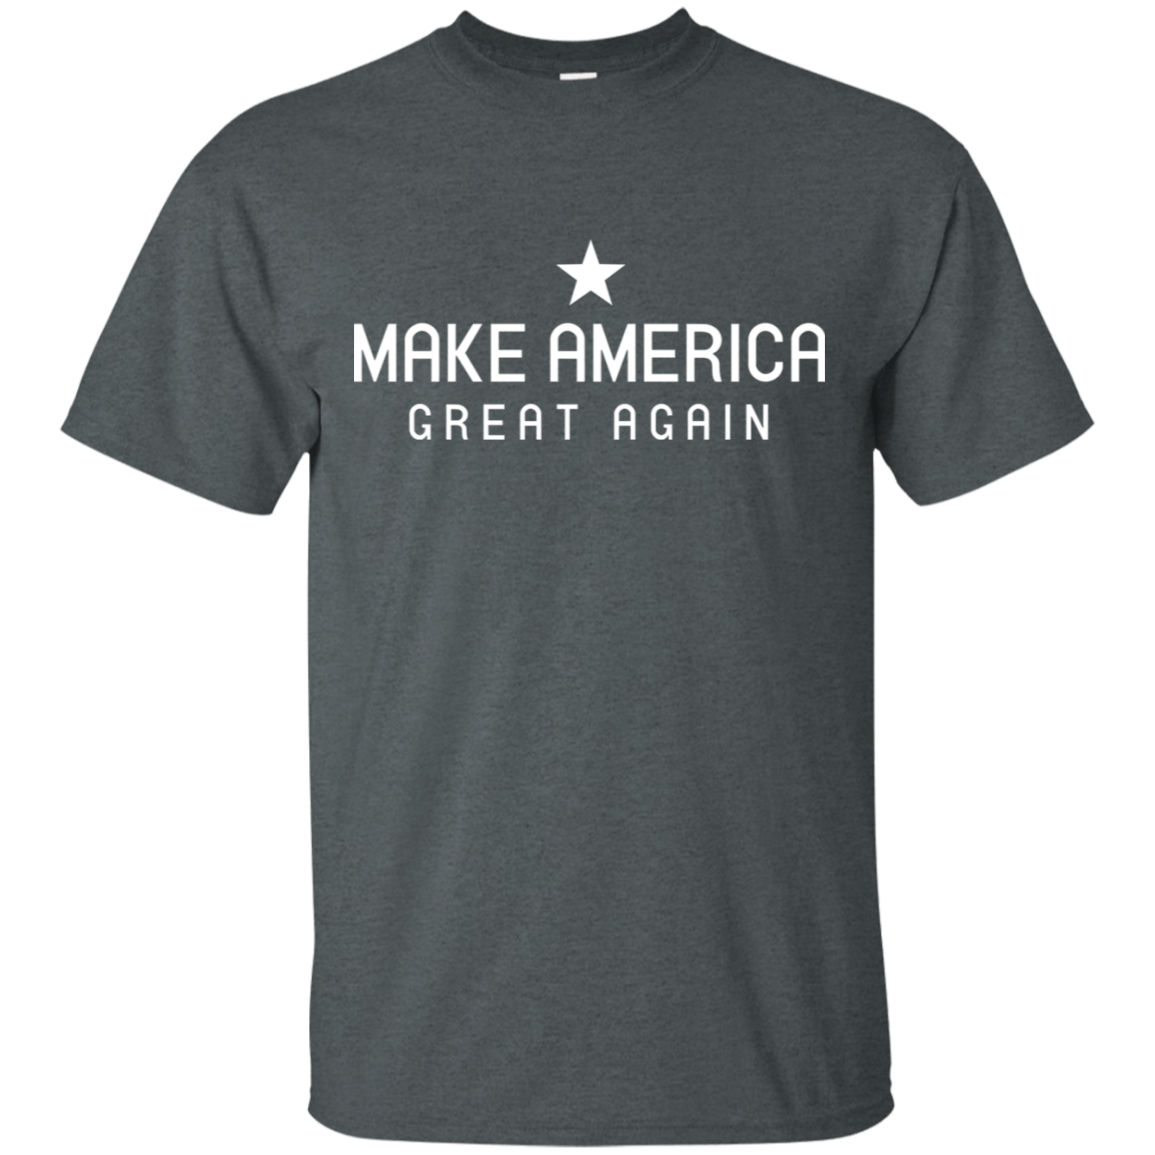 Make America Great Again Tee